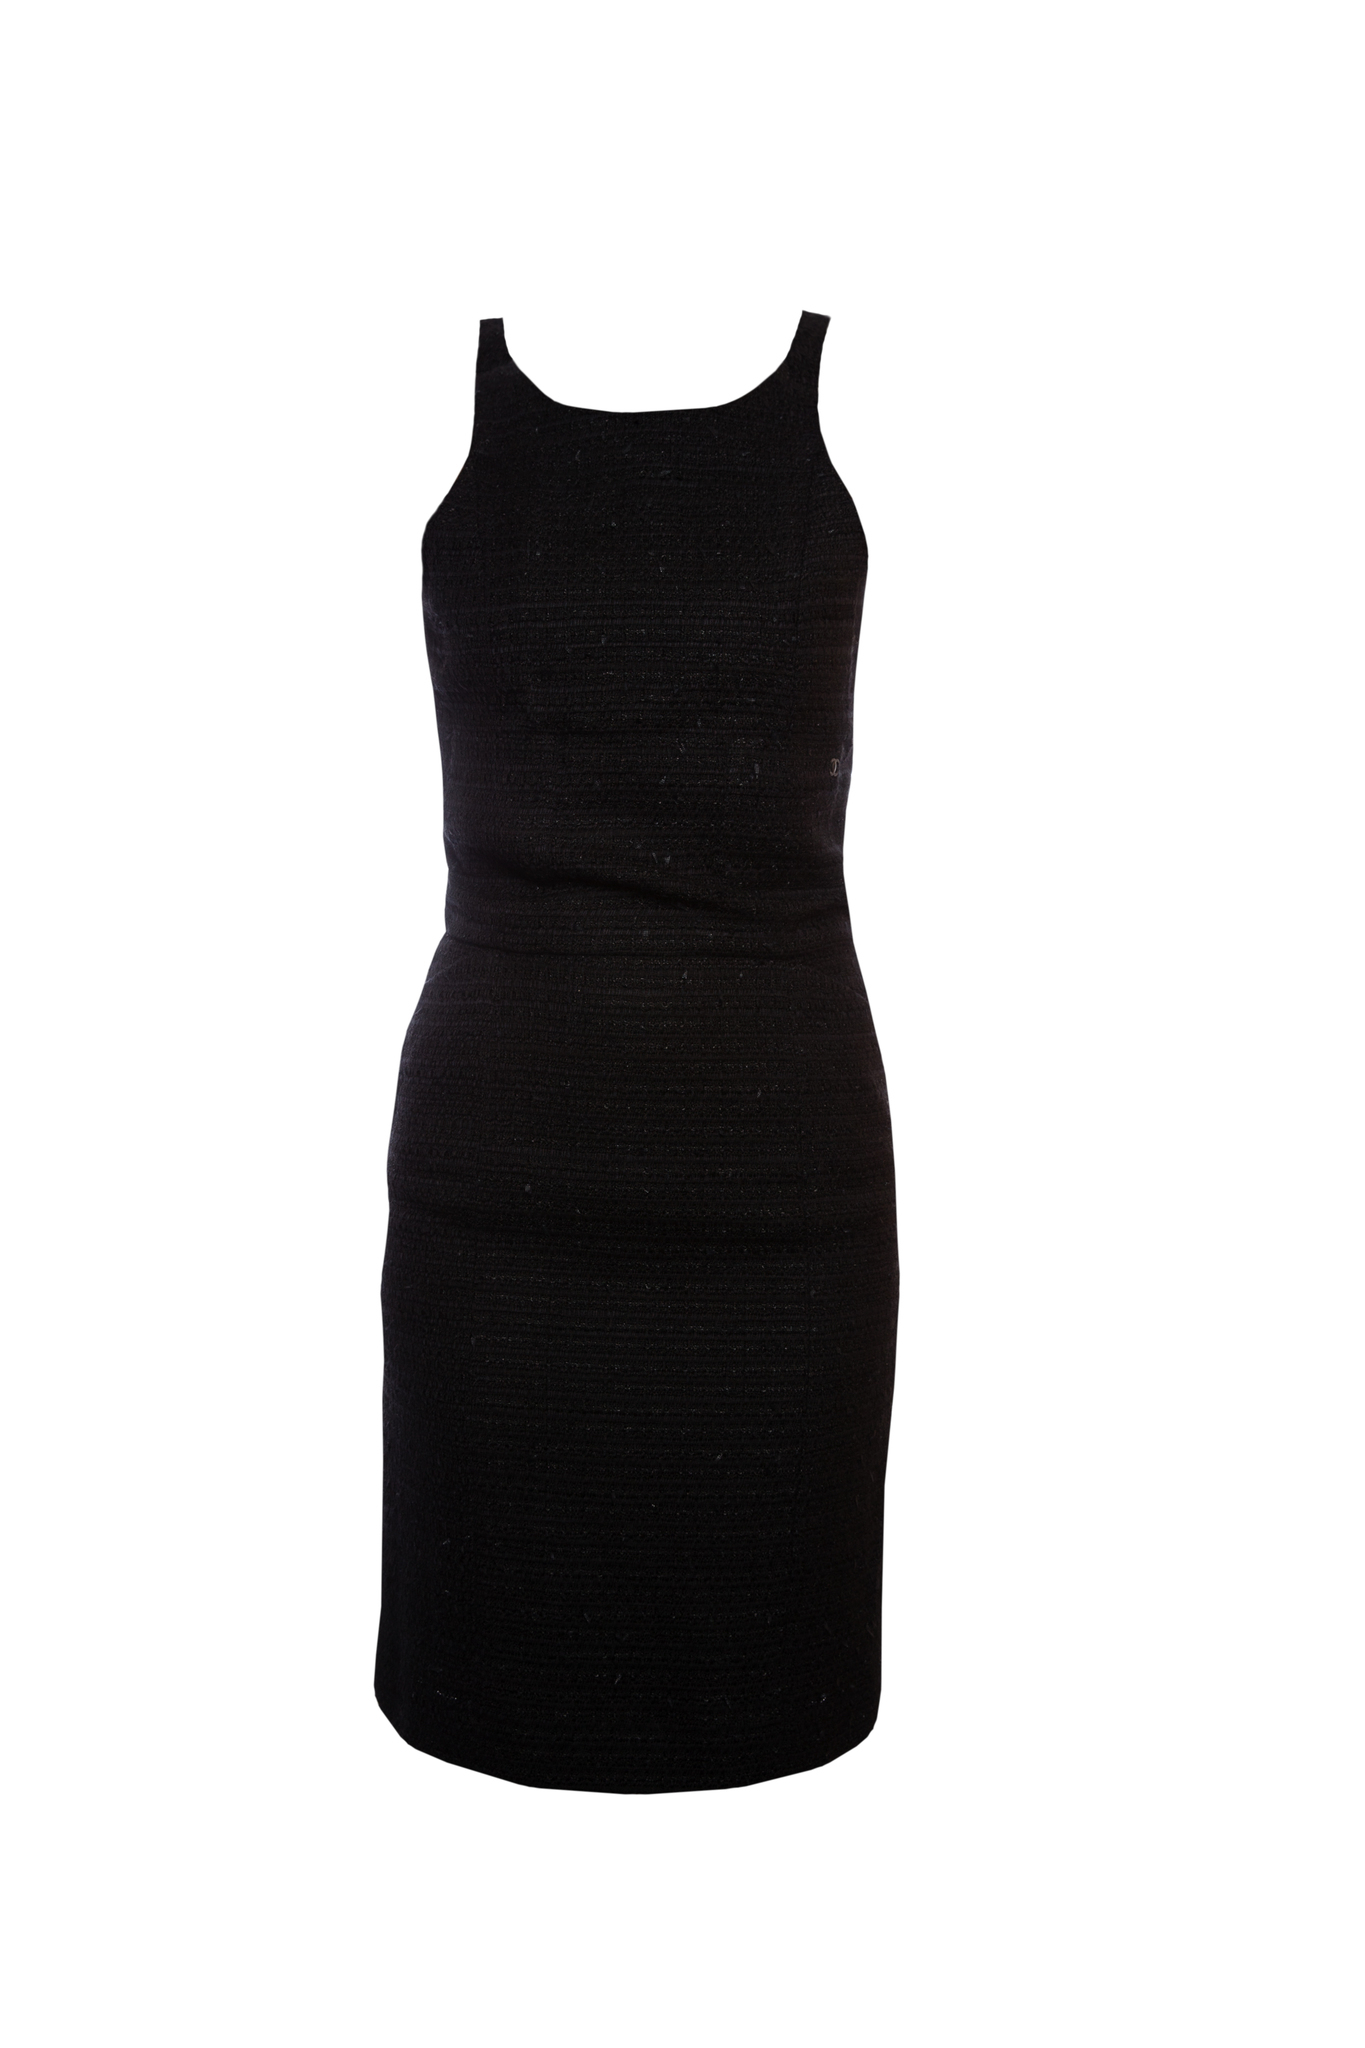 Элегантное платье из твида черного цвета от Chanel, 34 размер.